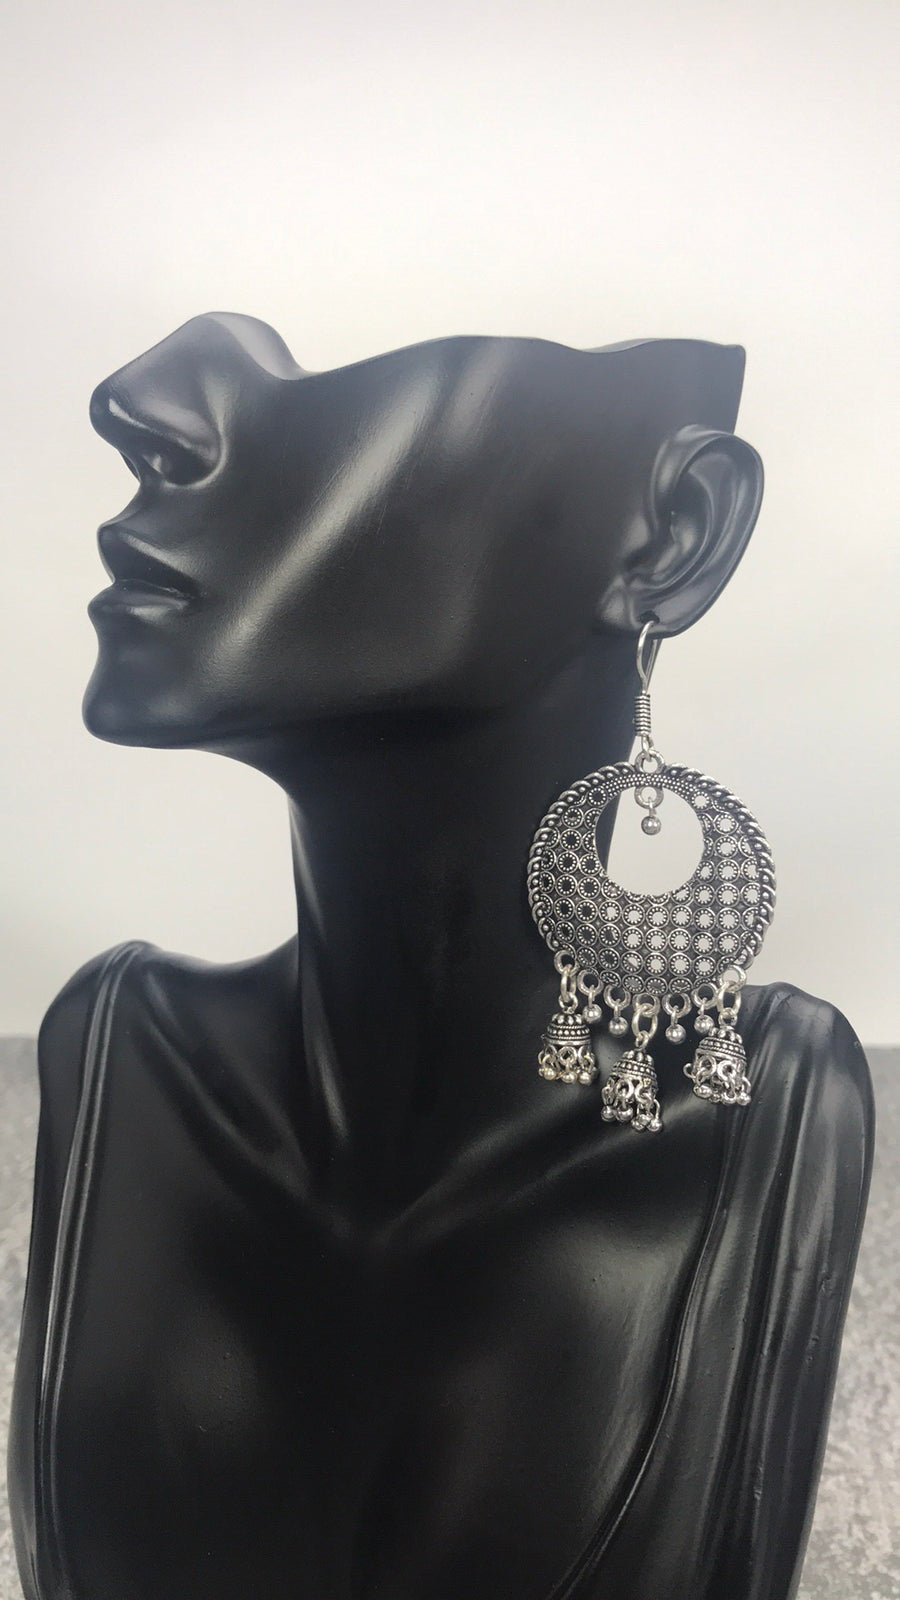 Raaz - Oxidized Silver Intricately Designed Dangling Earrings